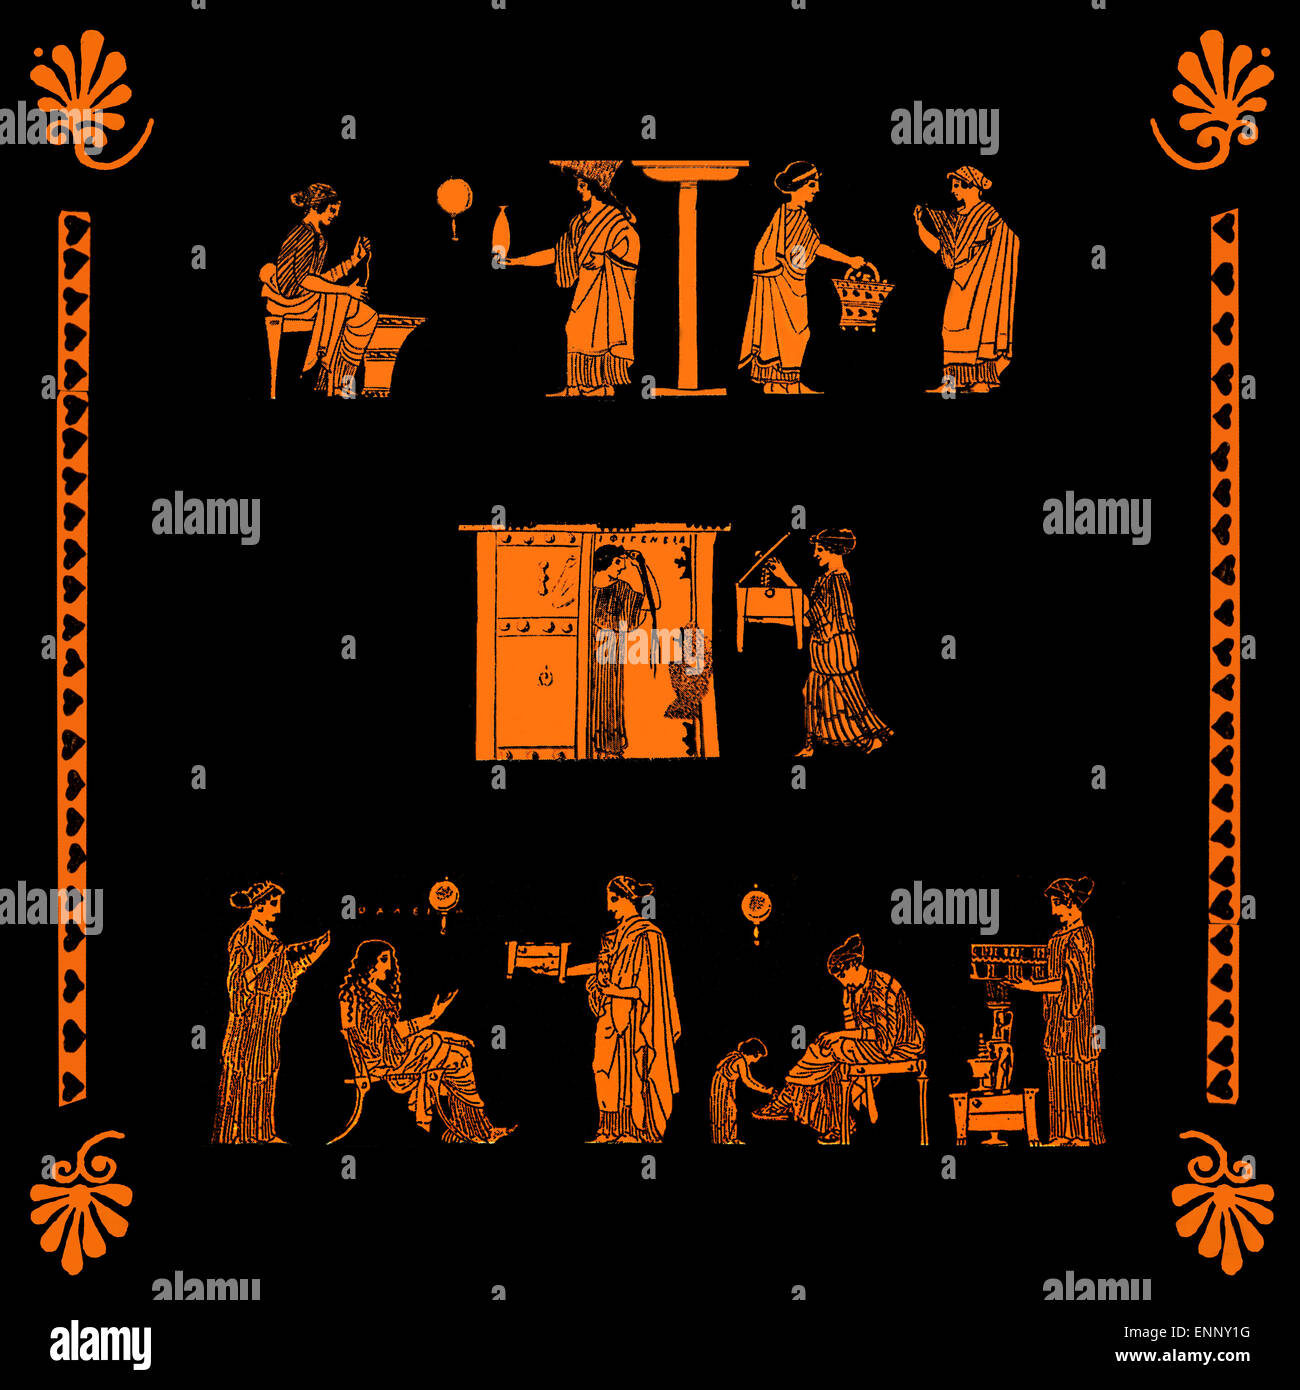 Frauen mit Hausarbeit und Aktivitäten zu Hause beschäftigt collage aus antiken griechischen Vase Bilder Stockfoto